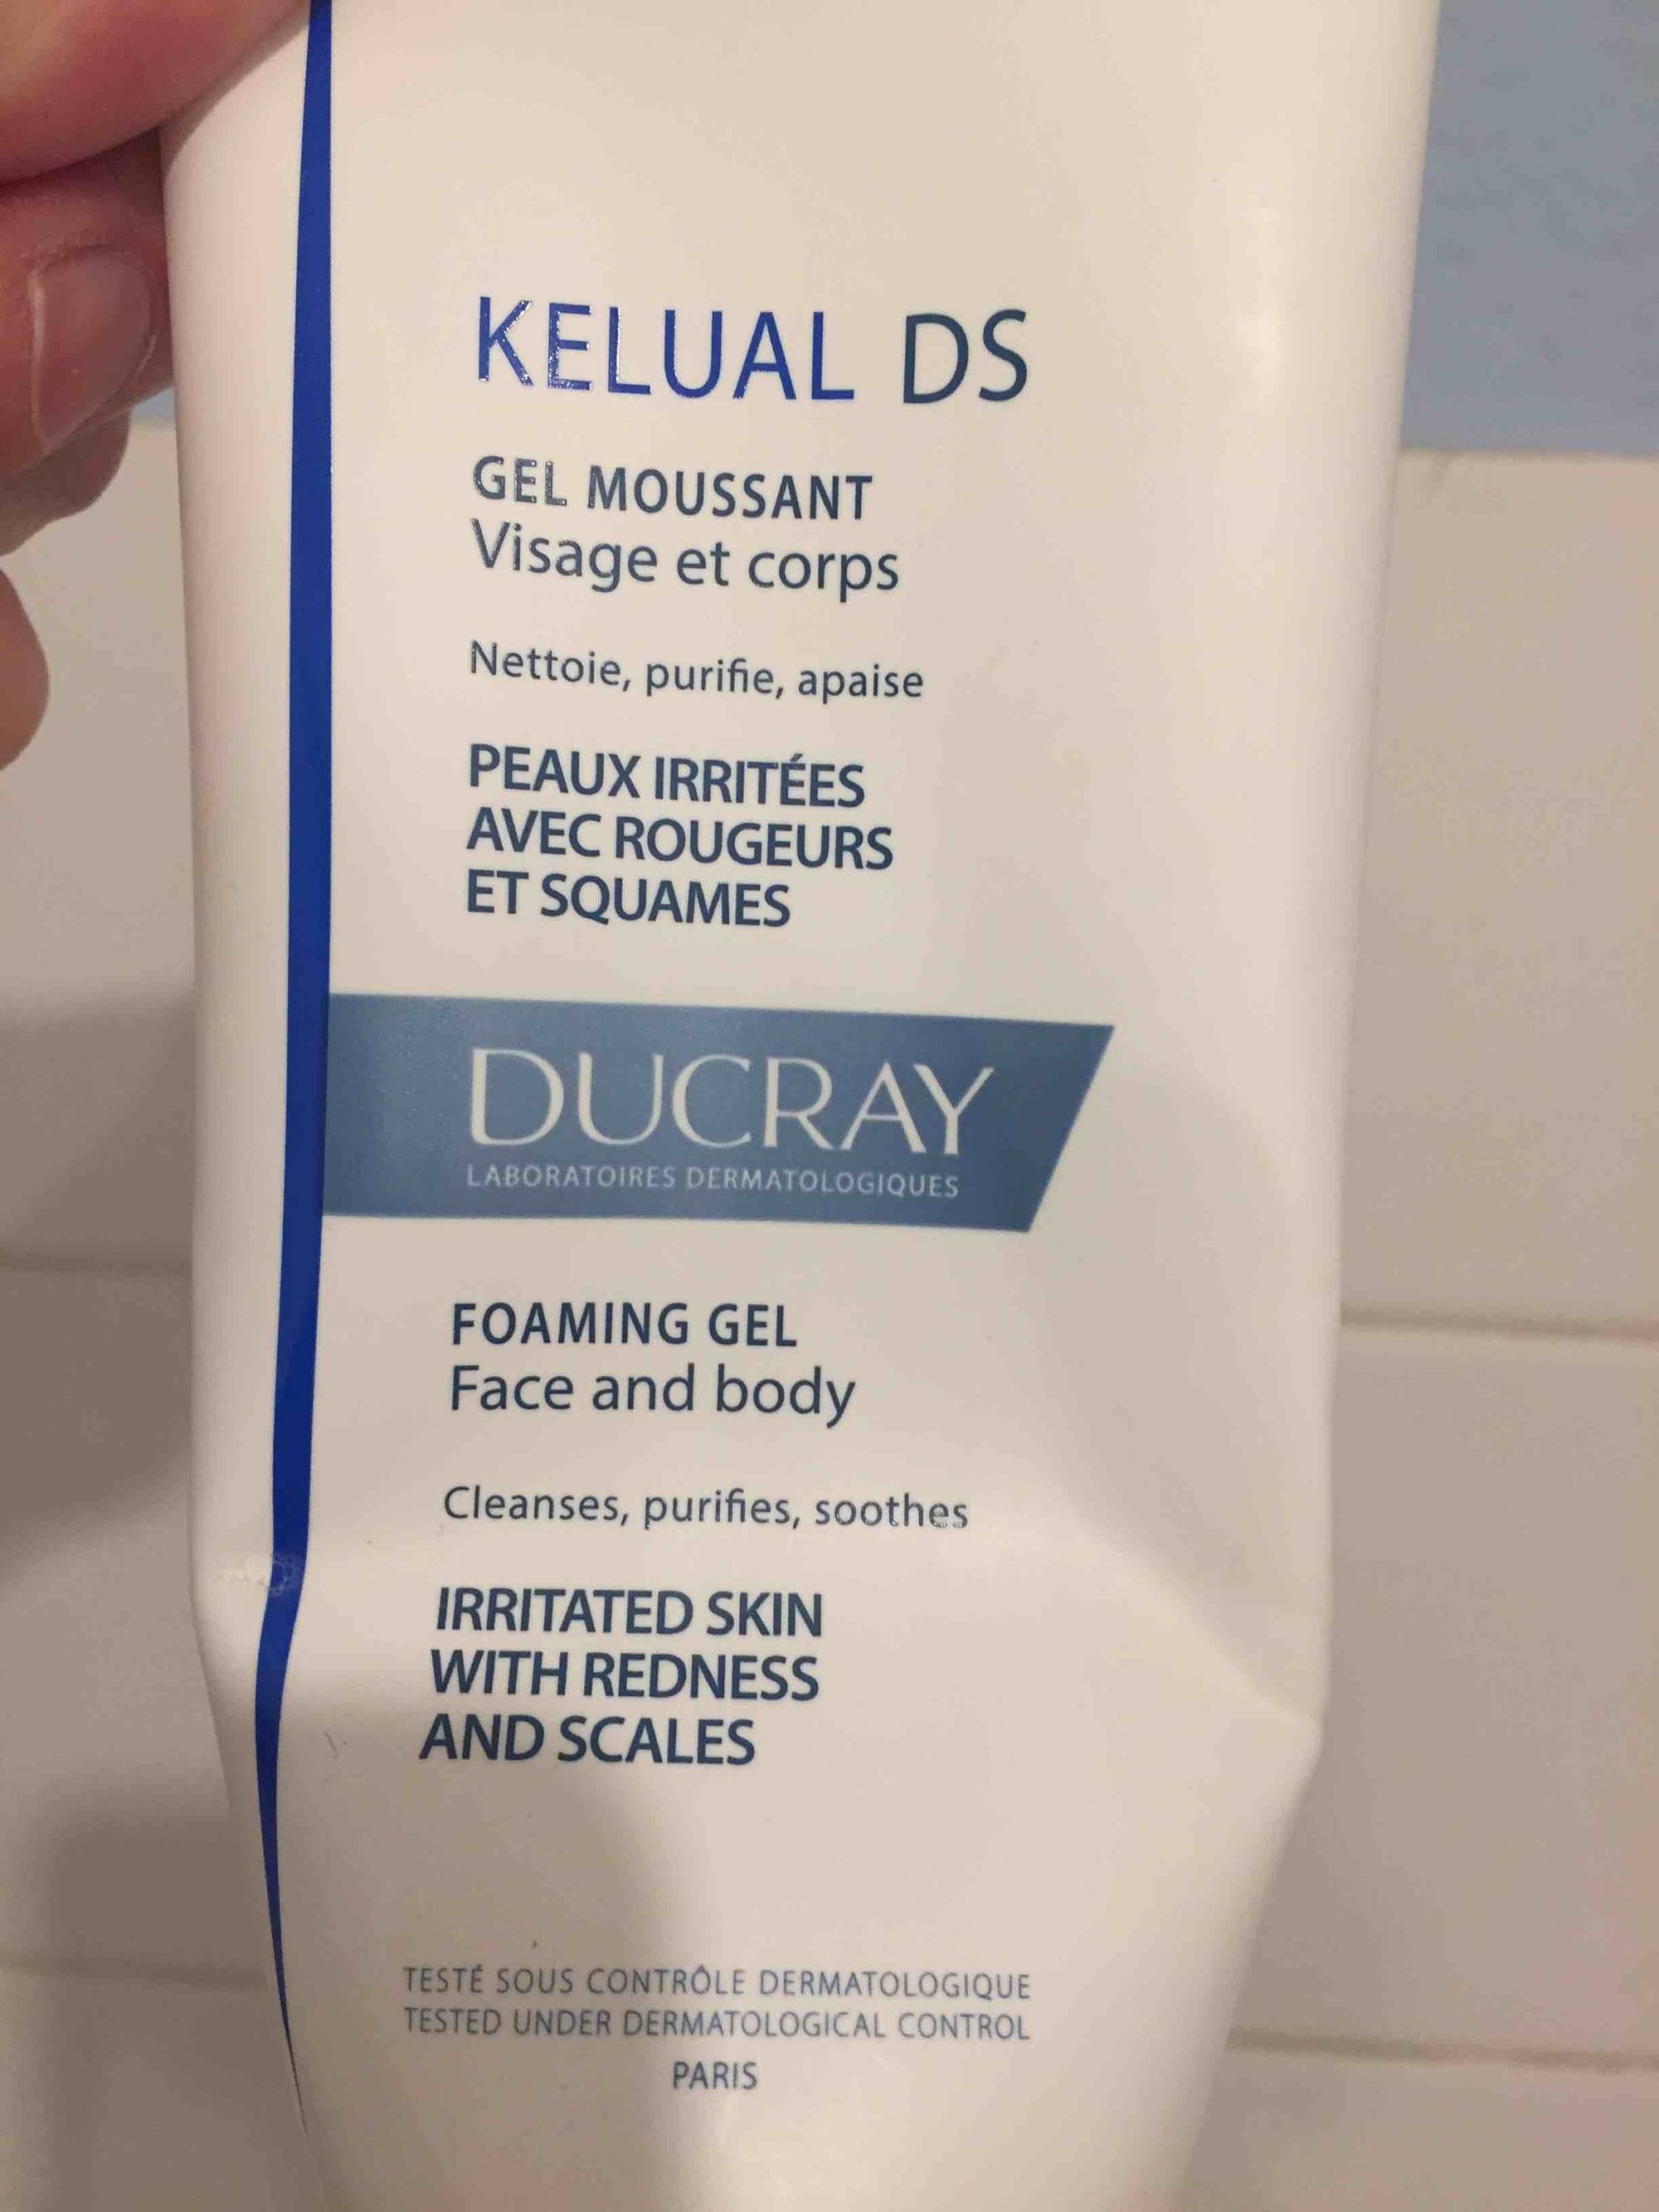 DUCRAY - Kelual ds - Gel moussant visage et corps